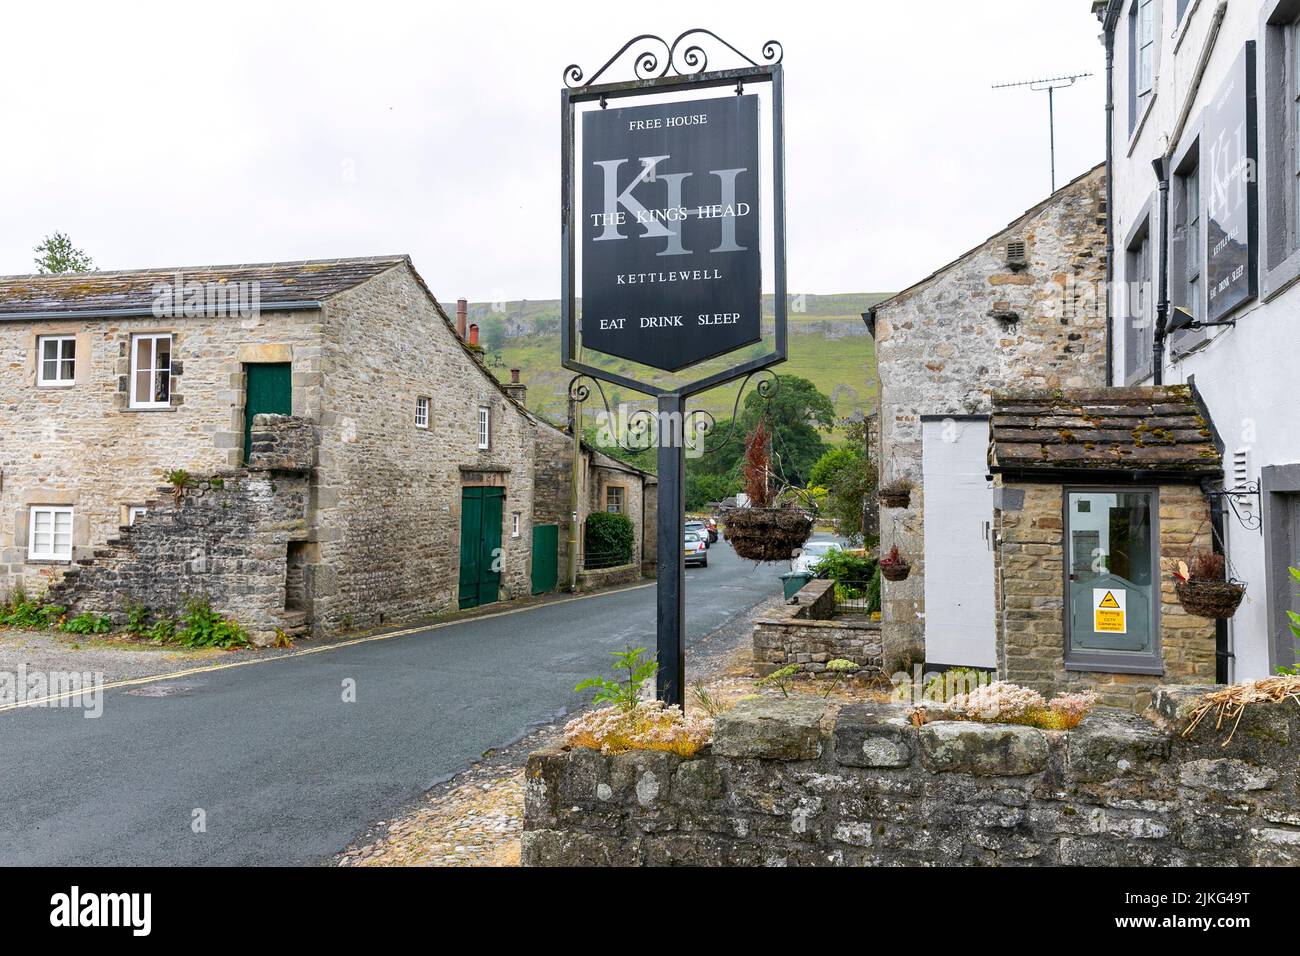 Le Kings Head maison publique gastro-pub à Kettlewell, village dans les Yorkshire Dales, North Yorkshire, Angleterre, Royaume-Uni Banque D'Images